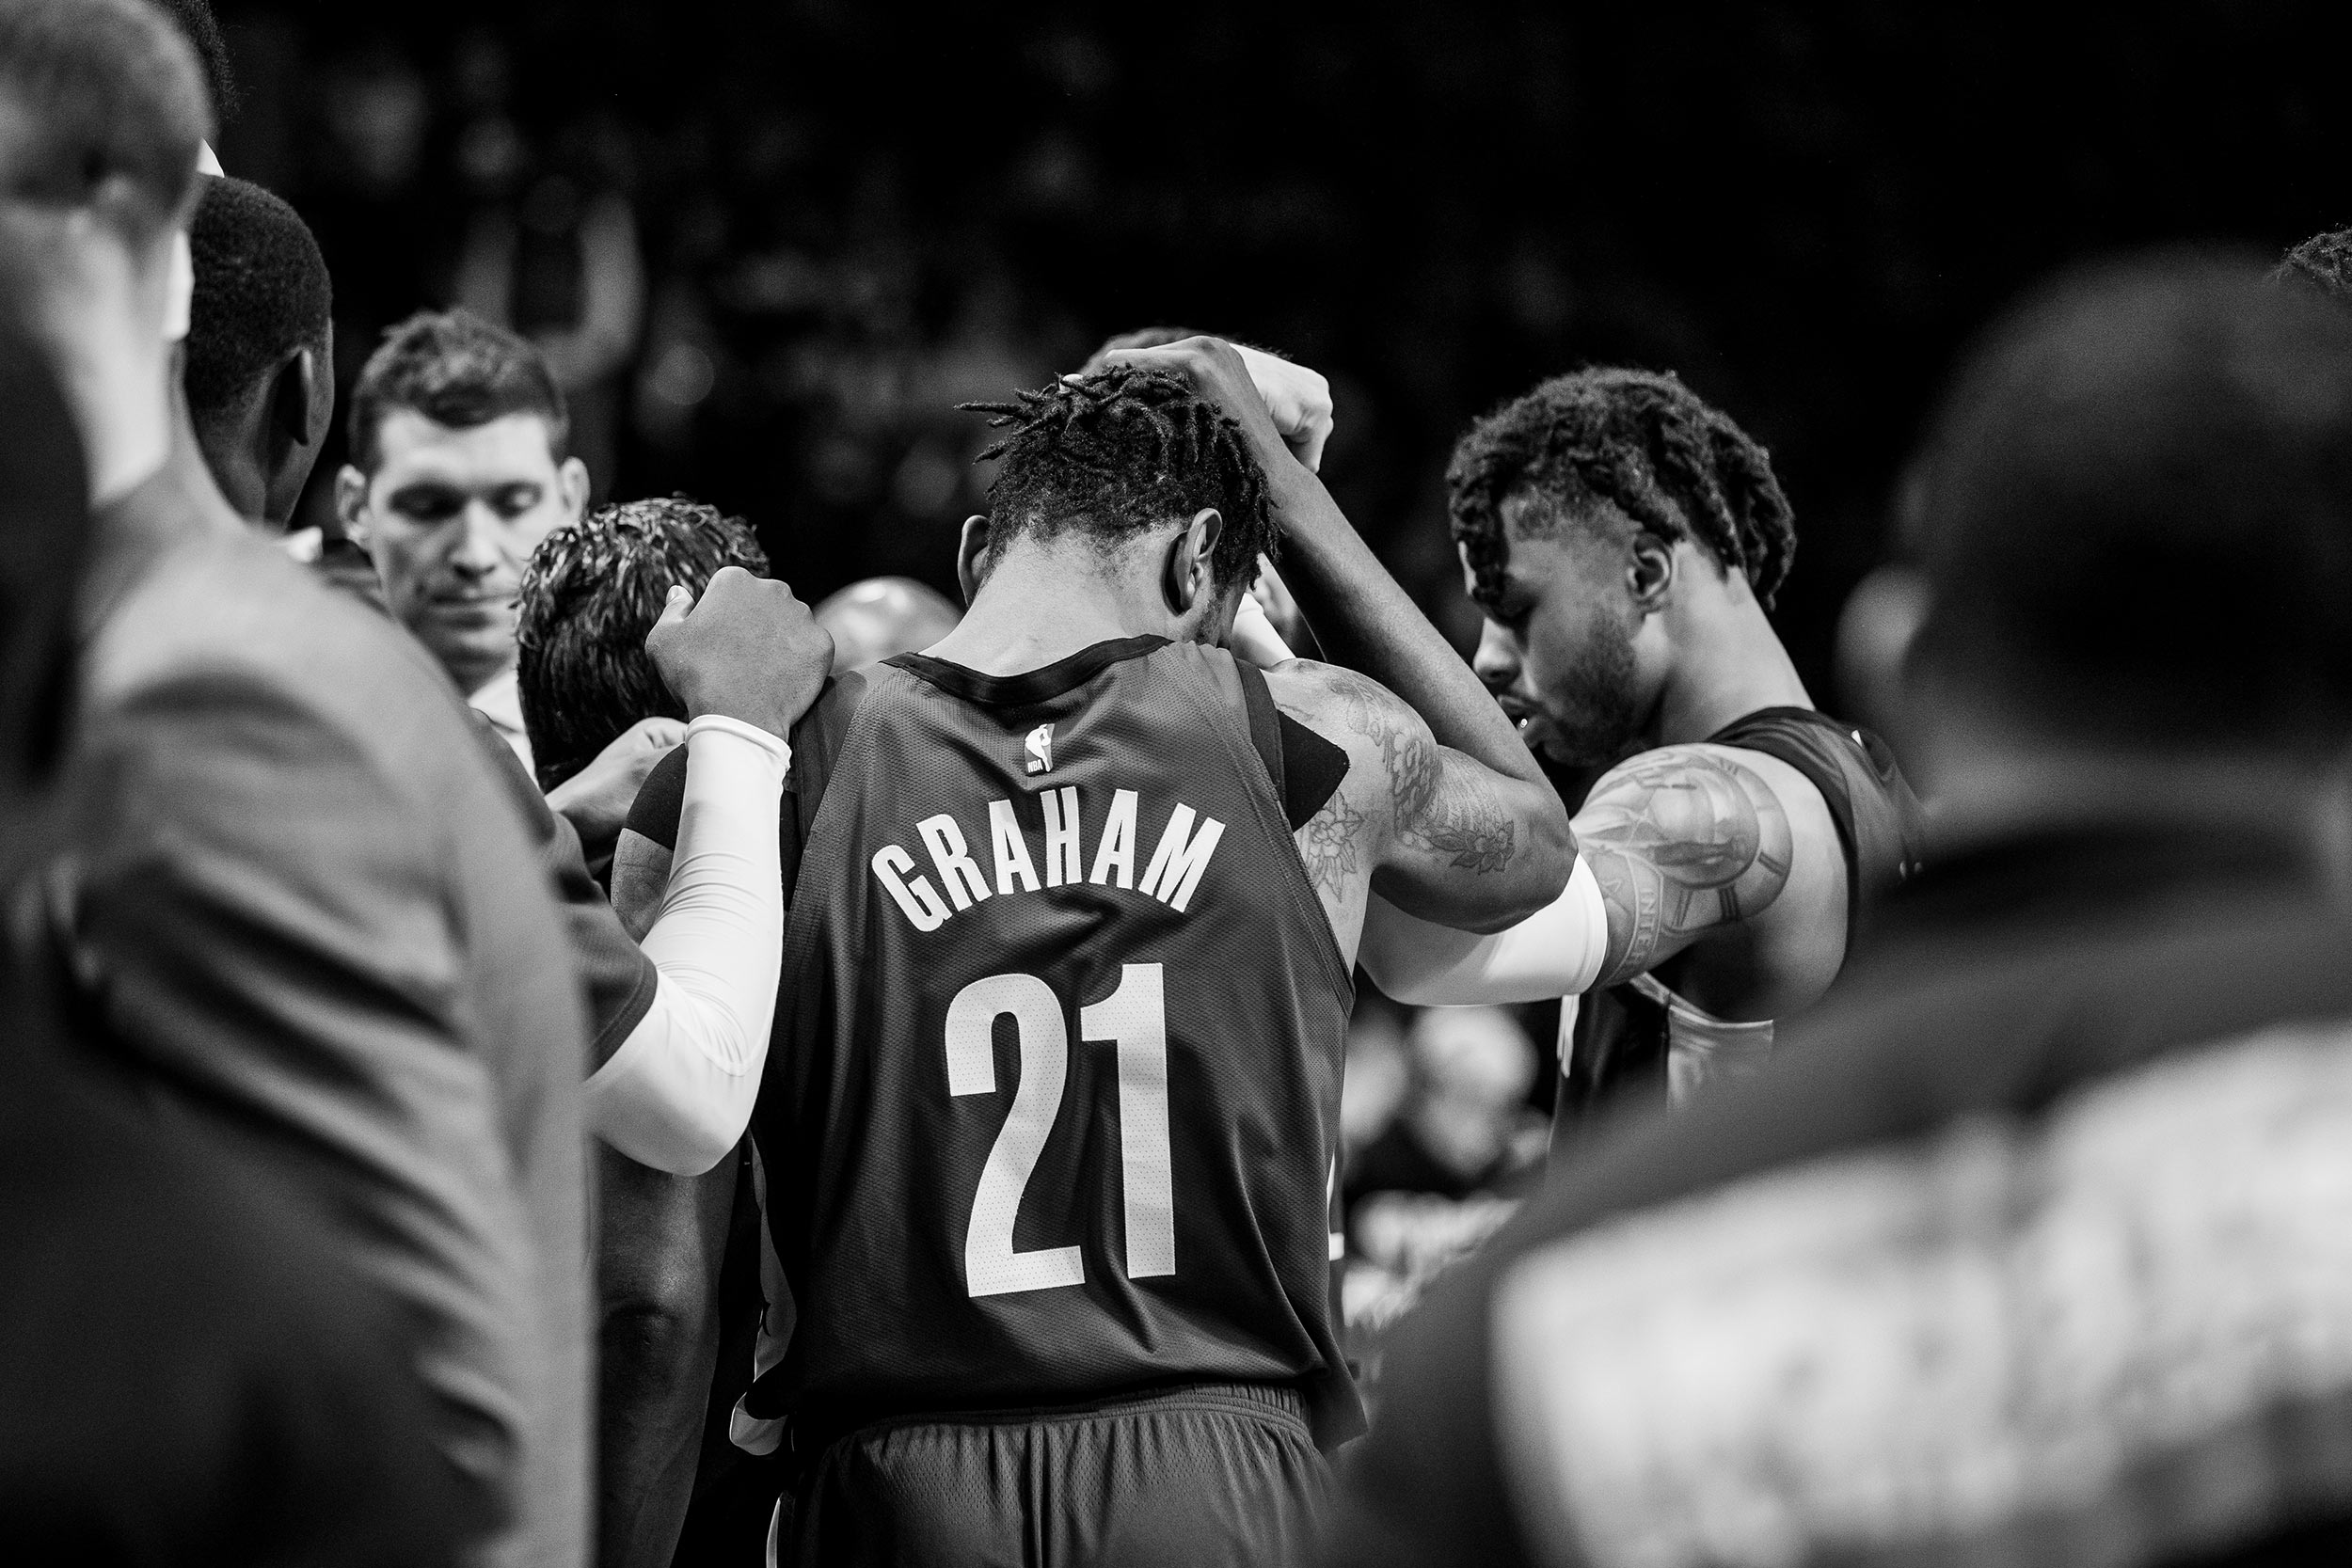 Brooklyn_NBA-14